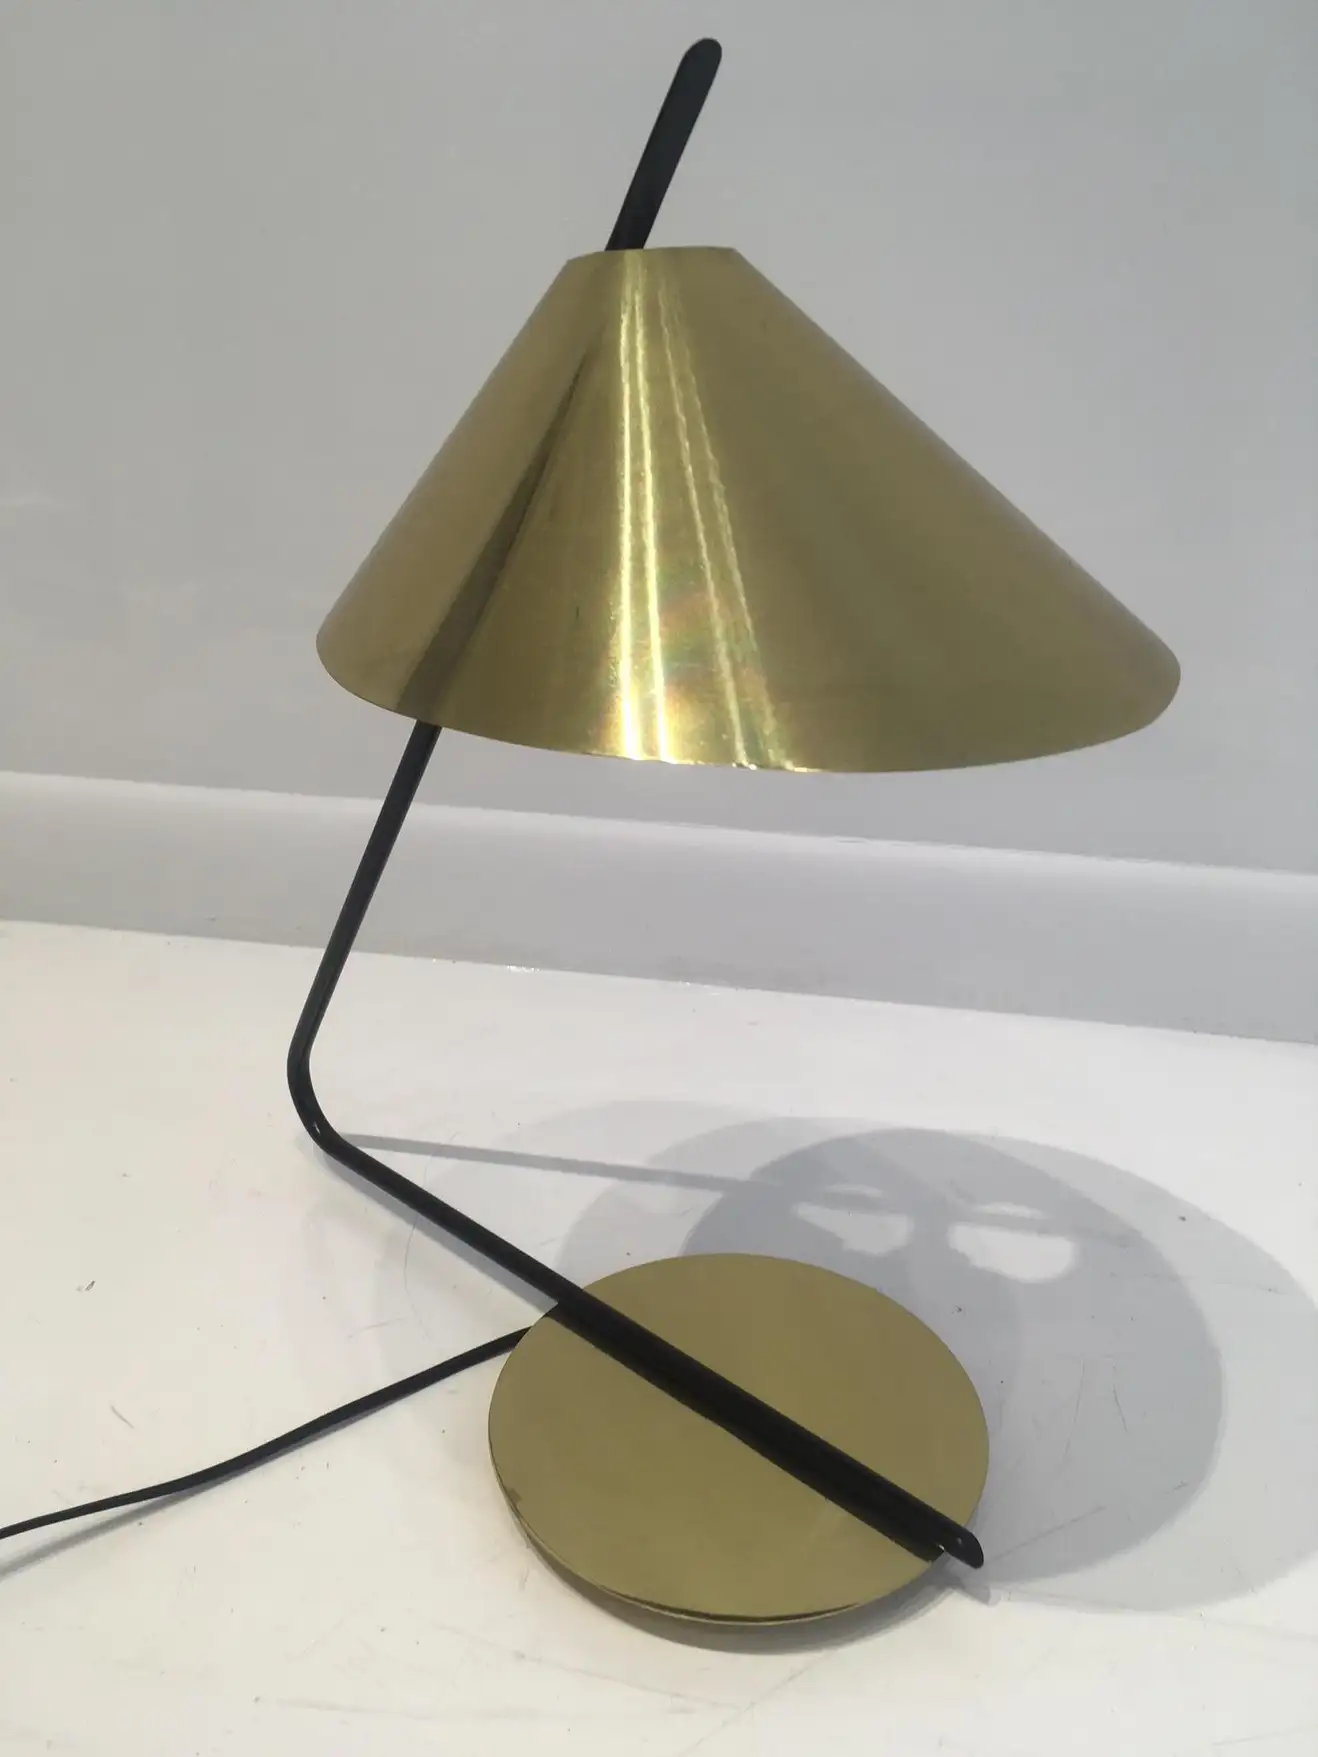 Настольная лампа PASSY by Bourgeois Boheme Atelier